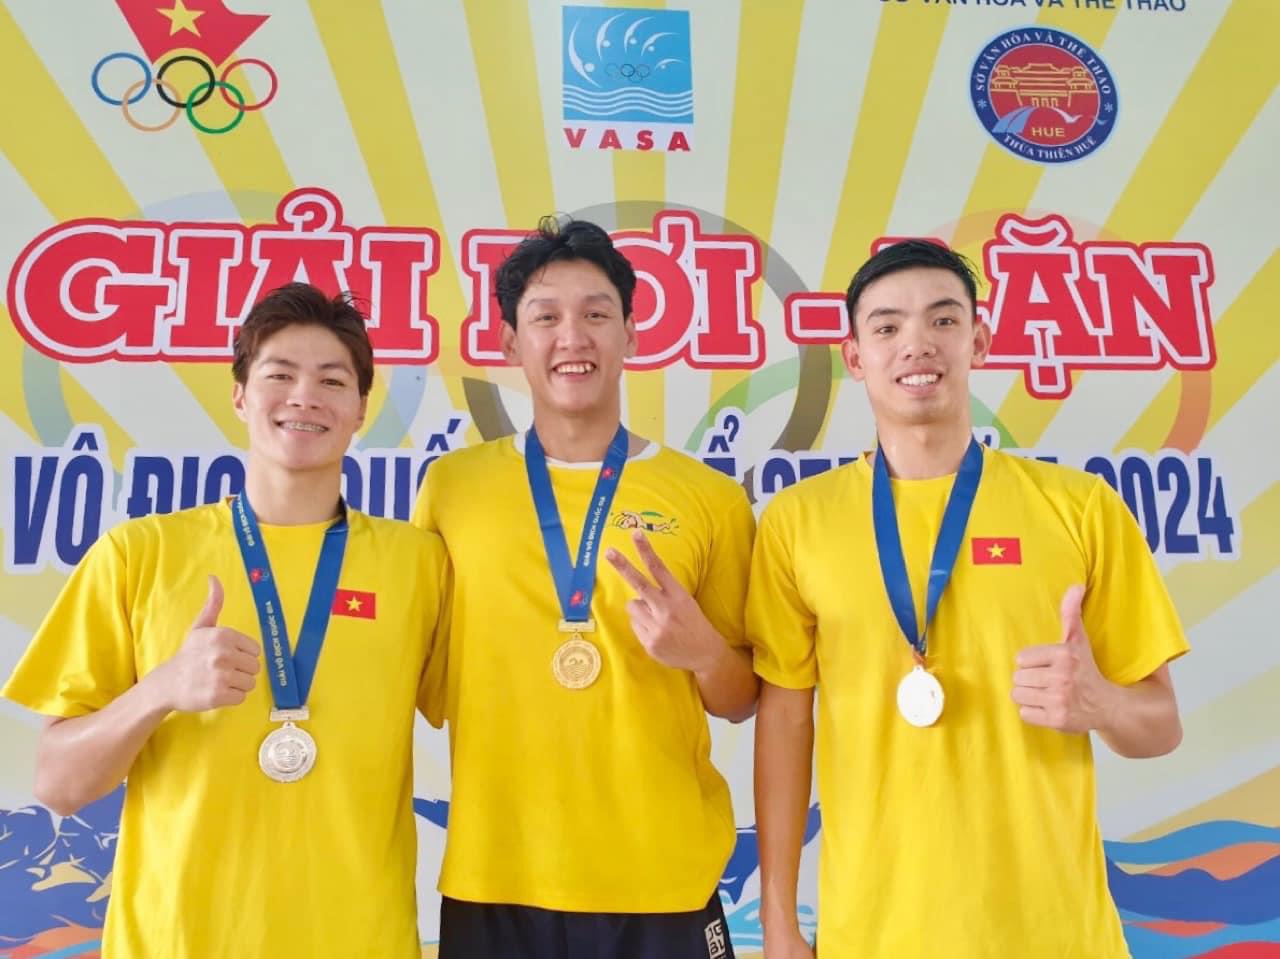 Hoàng Quý Phước (giữa) có giải đấu thành công cùng đội tuyển bơi Đà Nẵng.  Ảnh: Nhân vật cung cấp